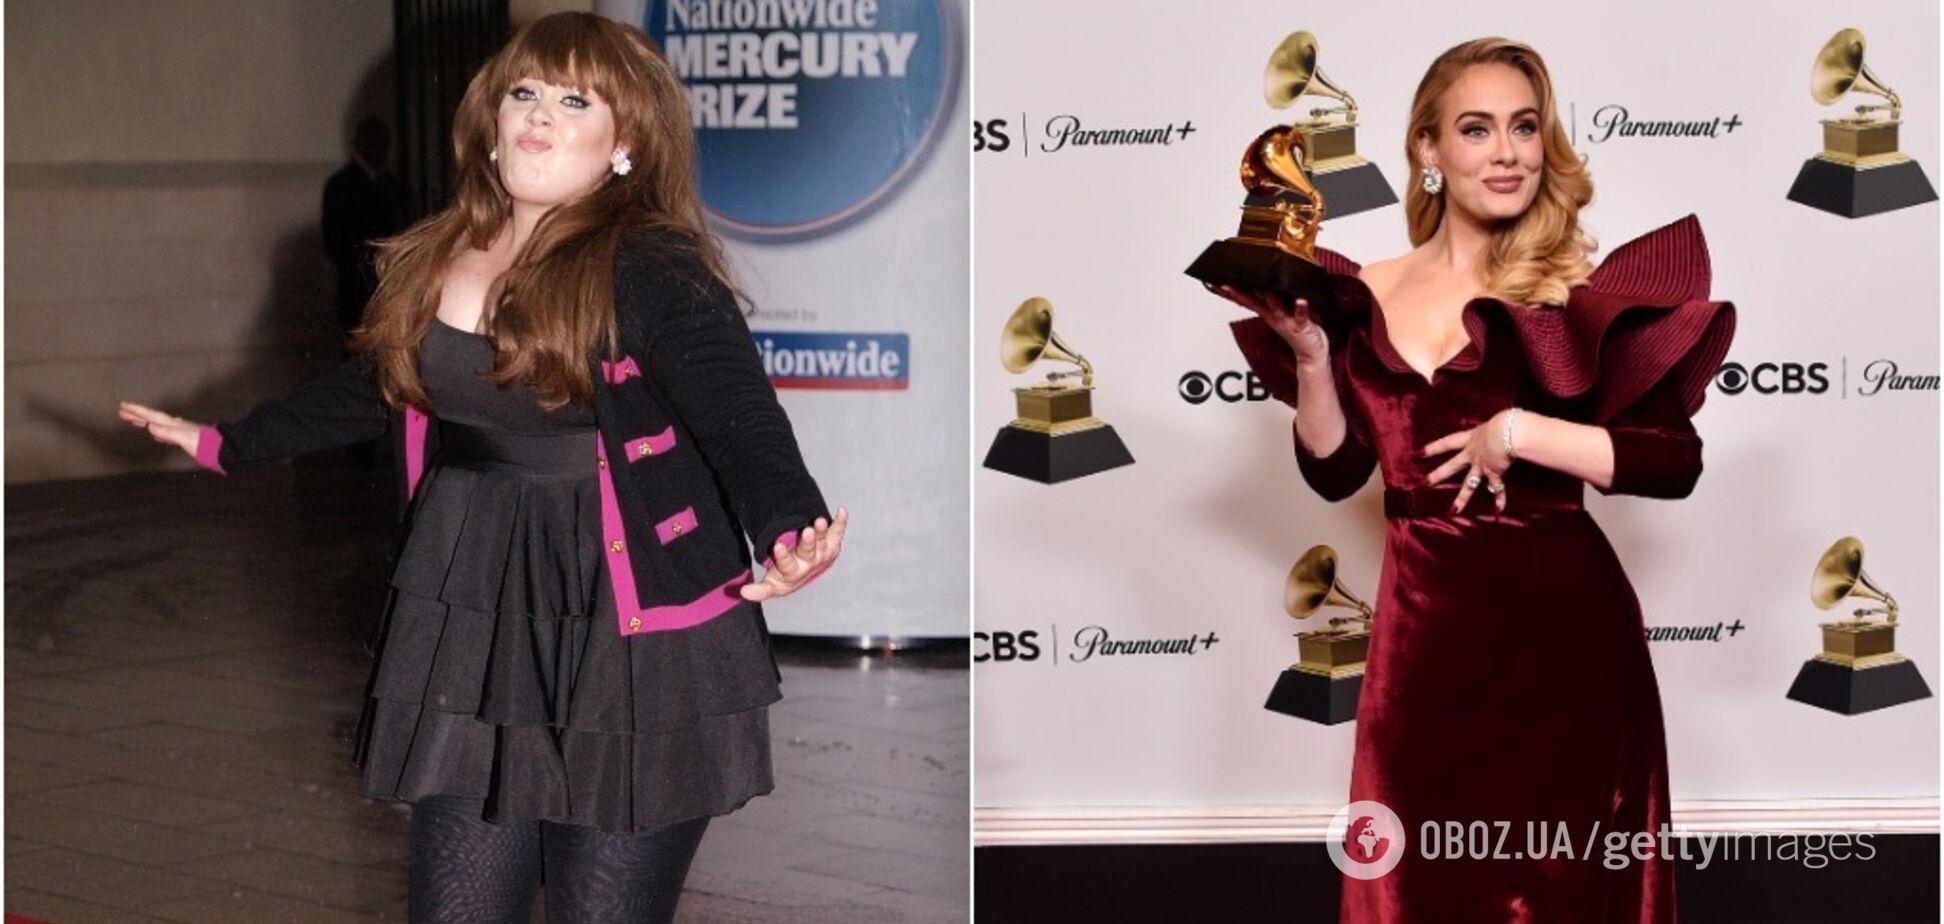 Похудела на 45 кг и получила 16 премий 'Грэмми': как изменилась певица Адель, которая еще совсем недавно не верила в себя. Впечатляющие фото